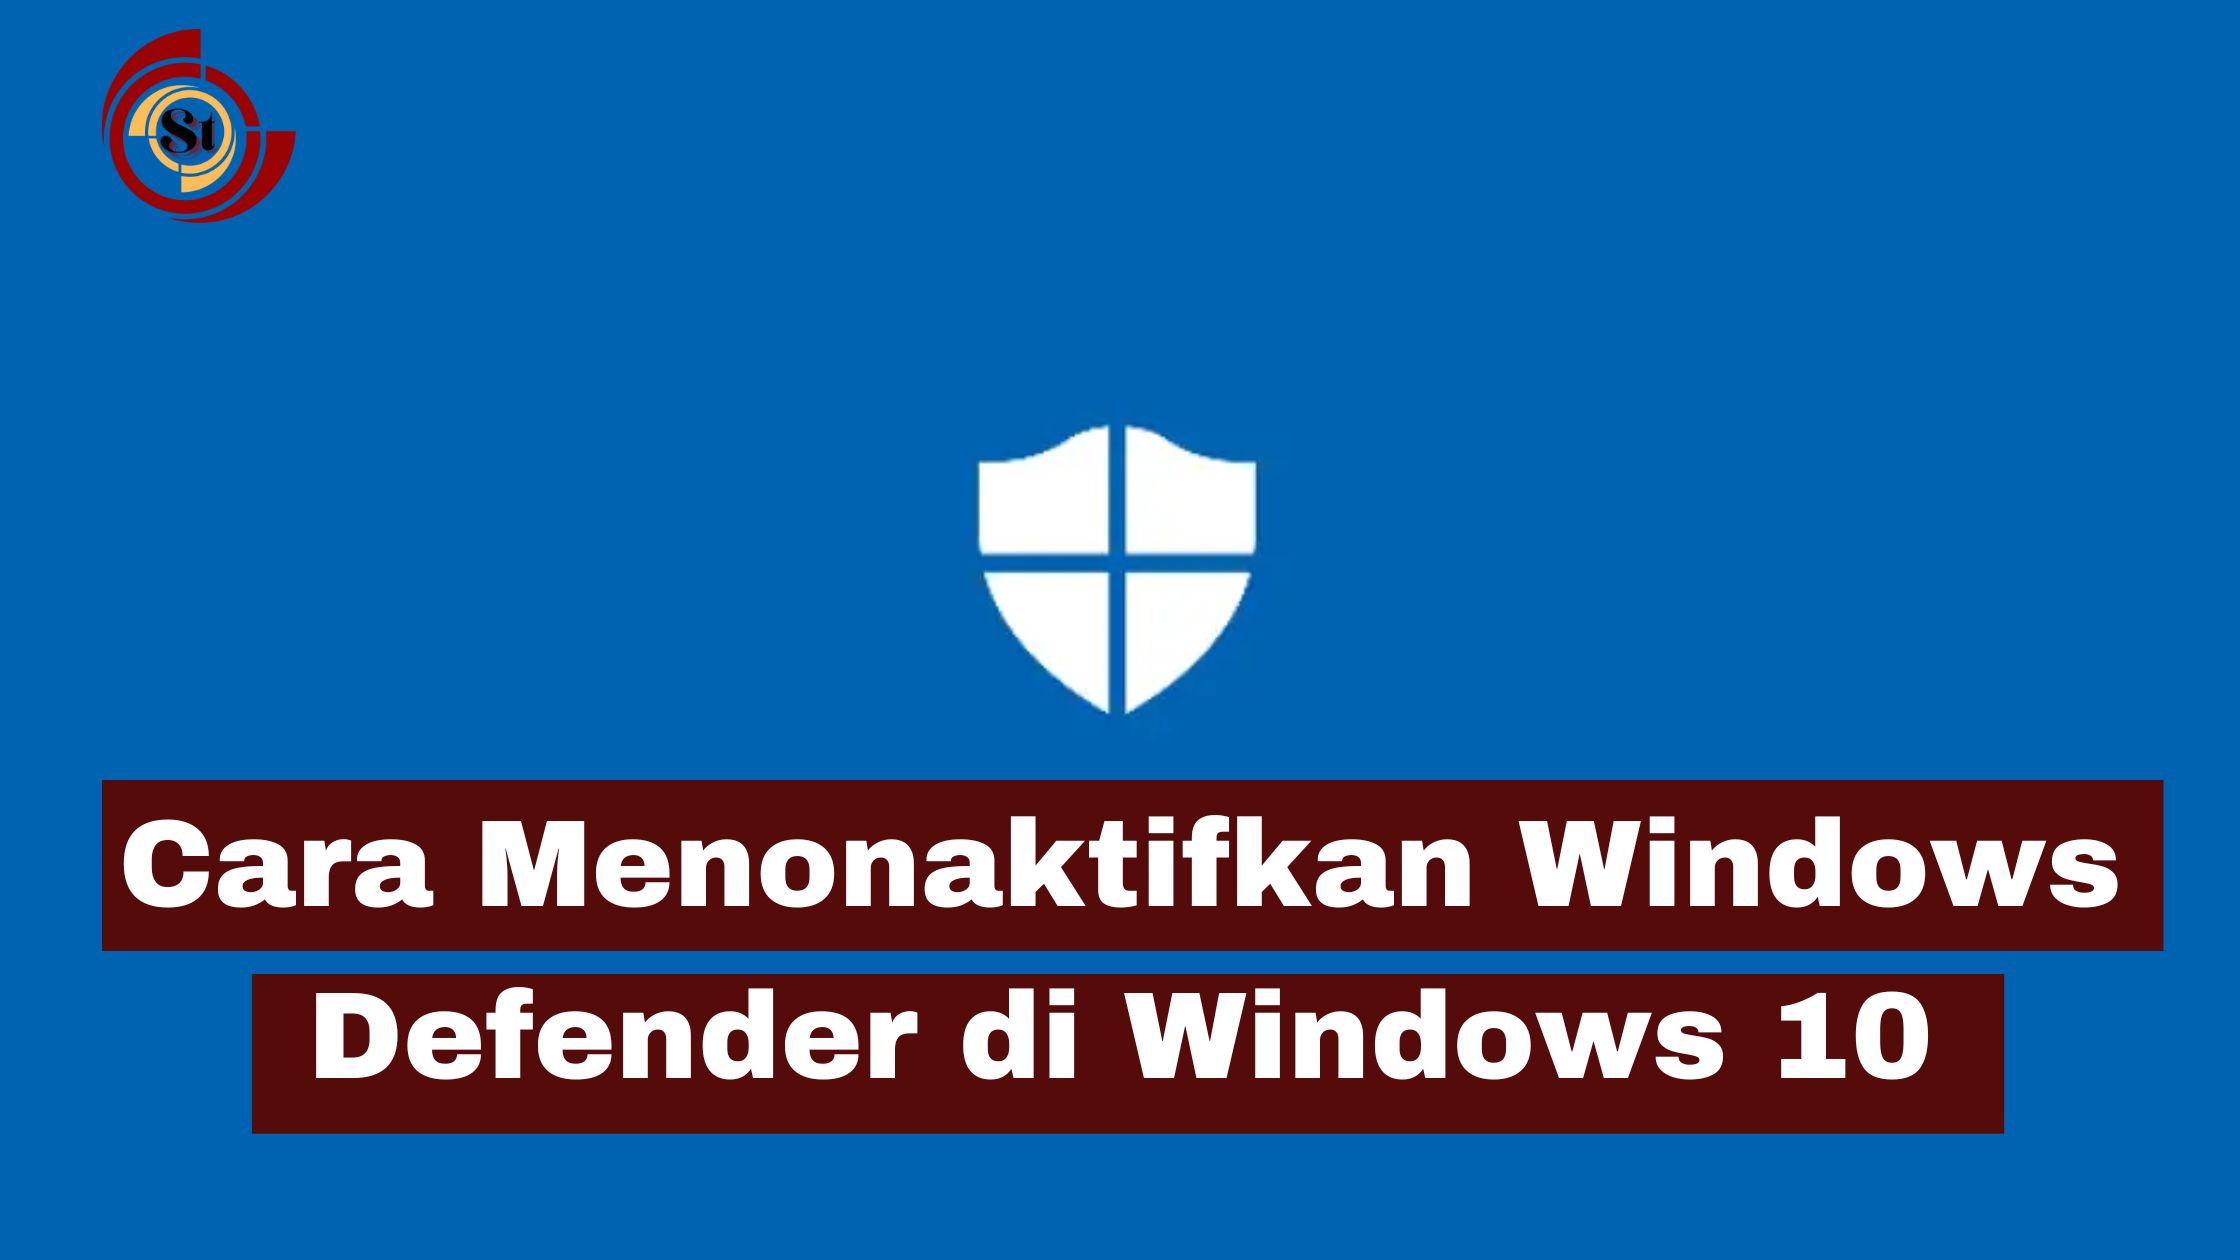 Menonaktifkan Windows Defender di Windows 10